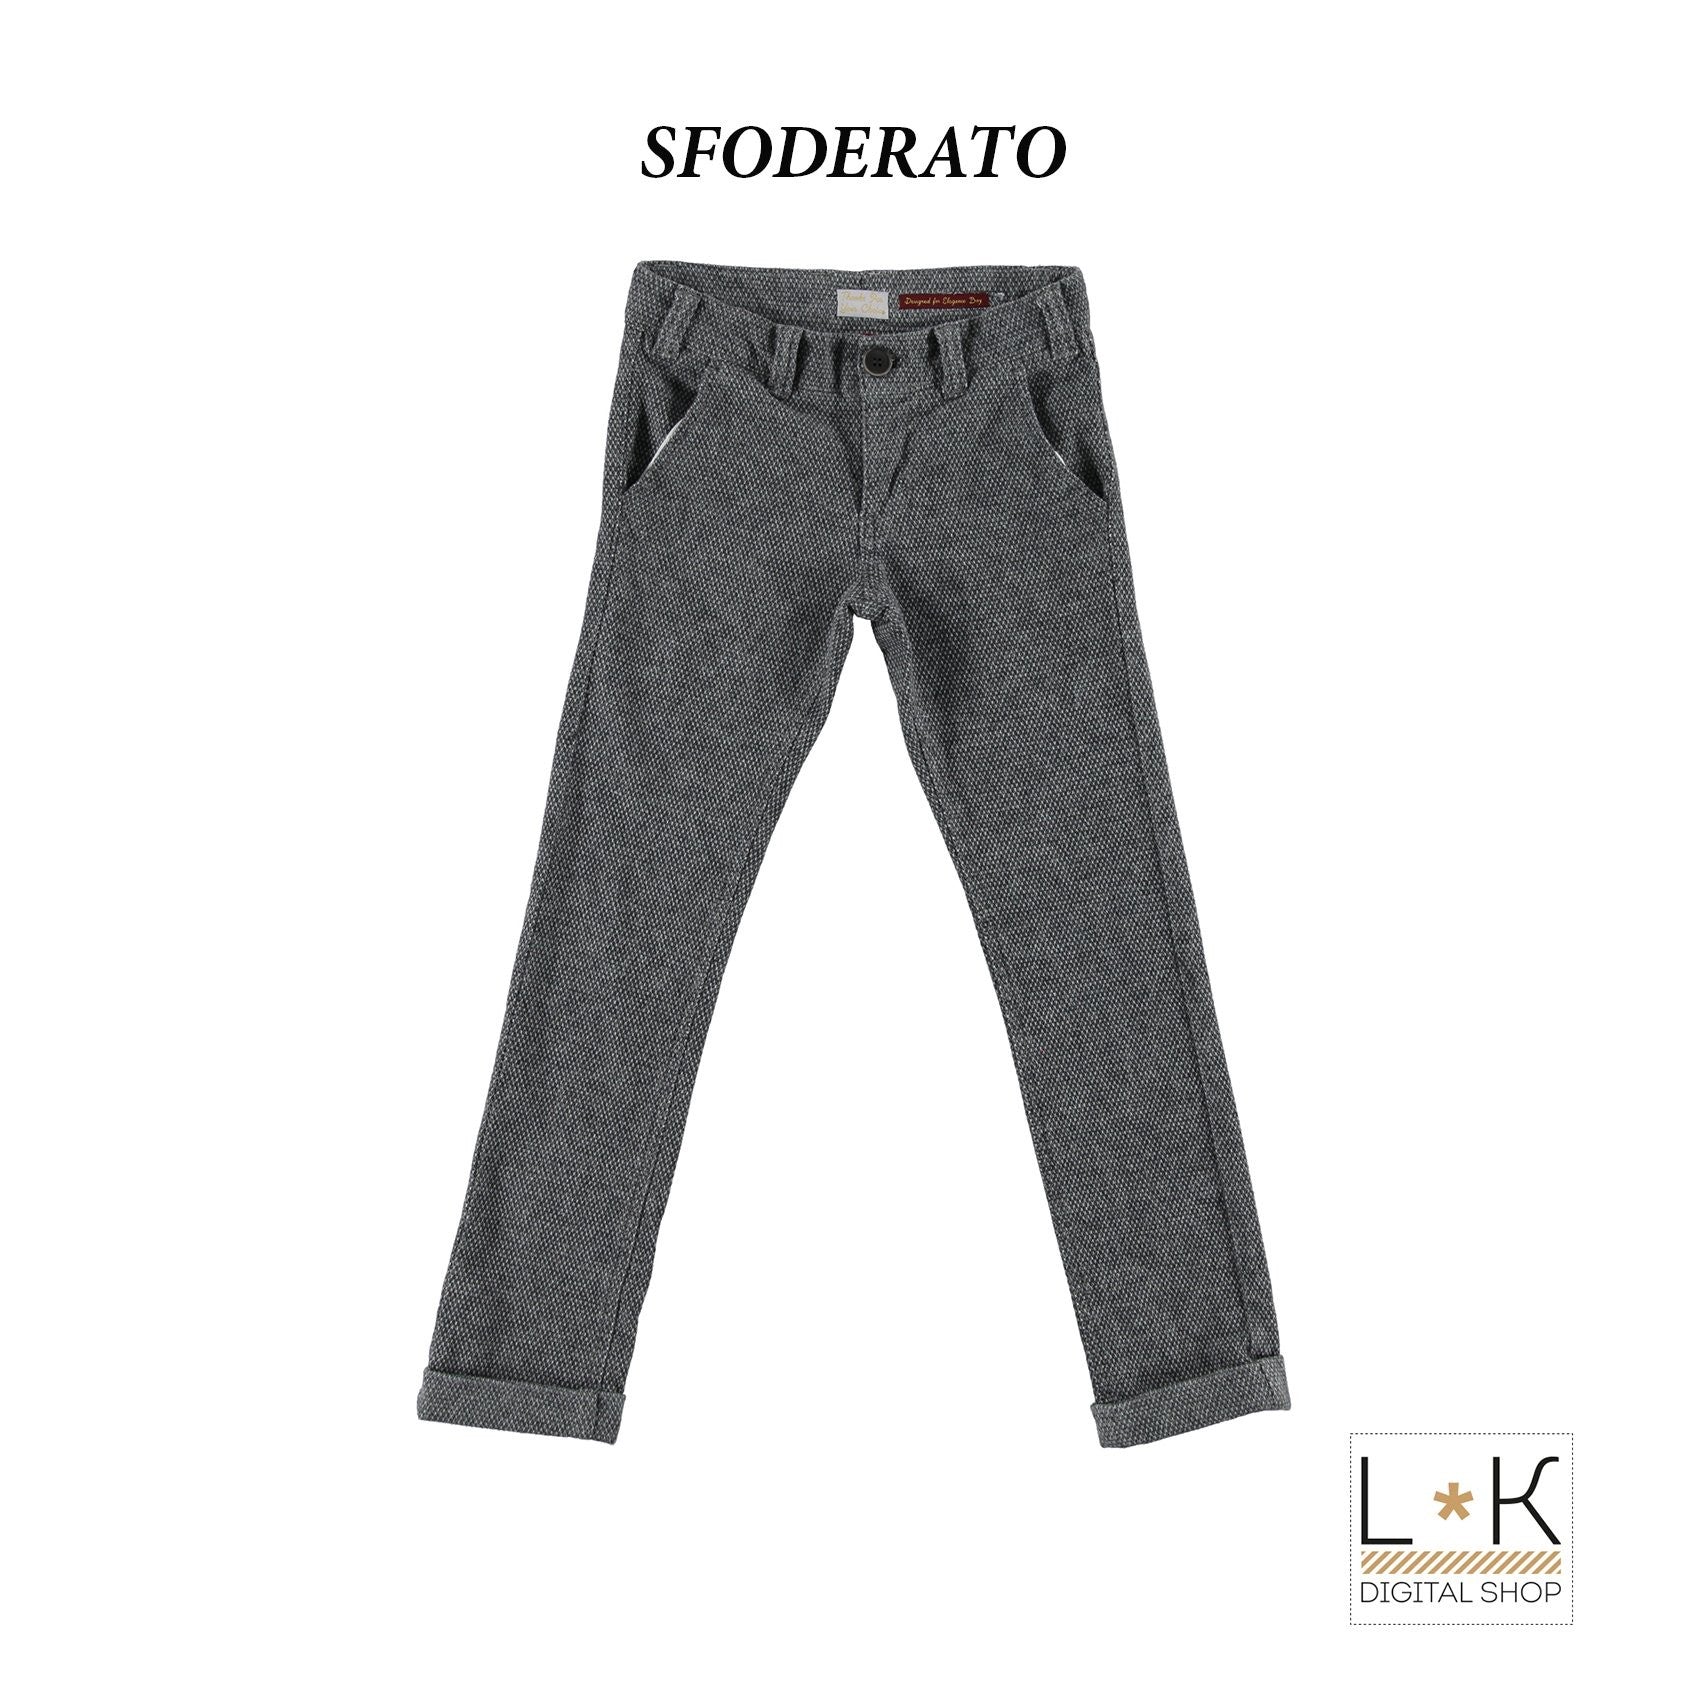 Pantalone in Cotone Grigio Tasche America Bambino Sarabanda L355 - SARABANDA - LuxuryKids